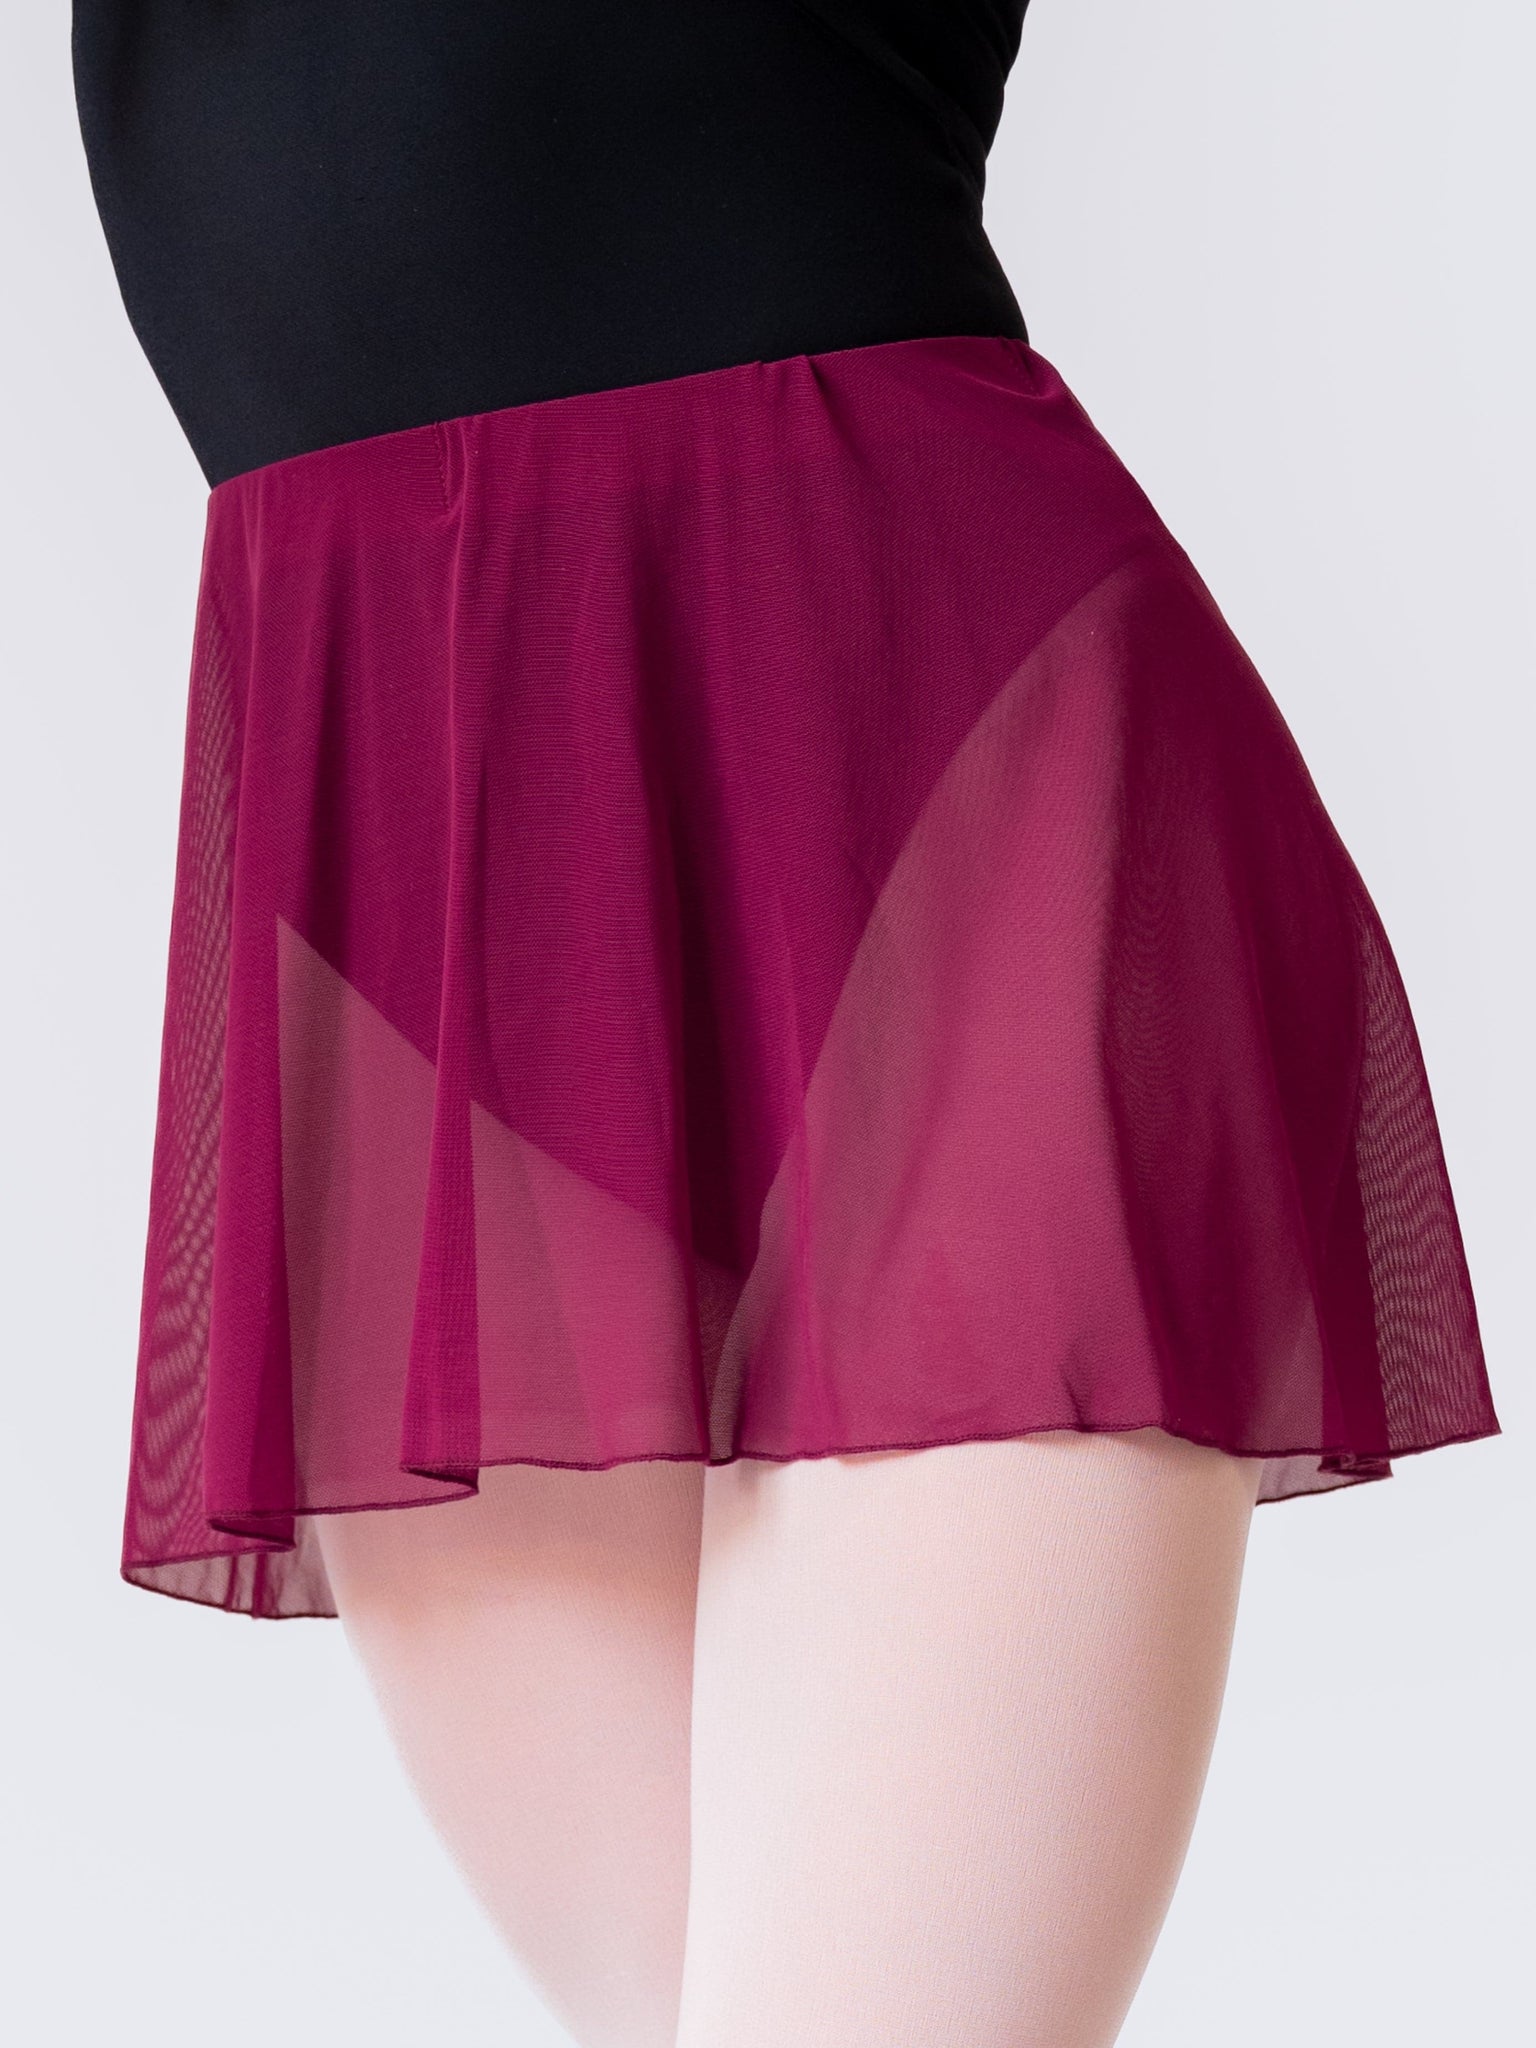 purple mesh skirt